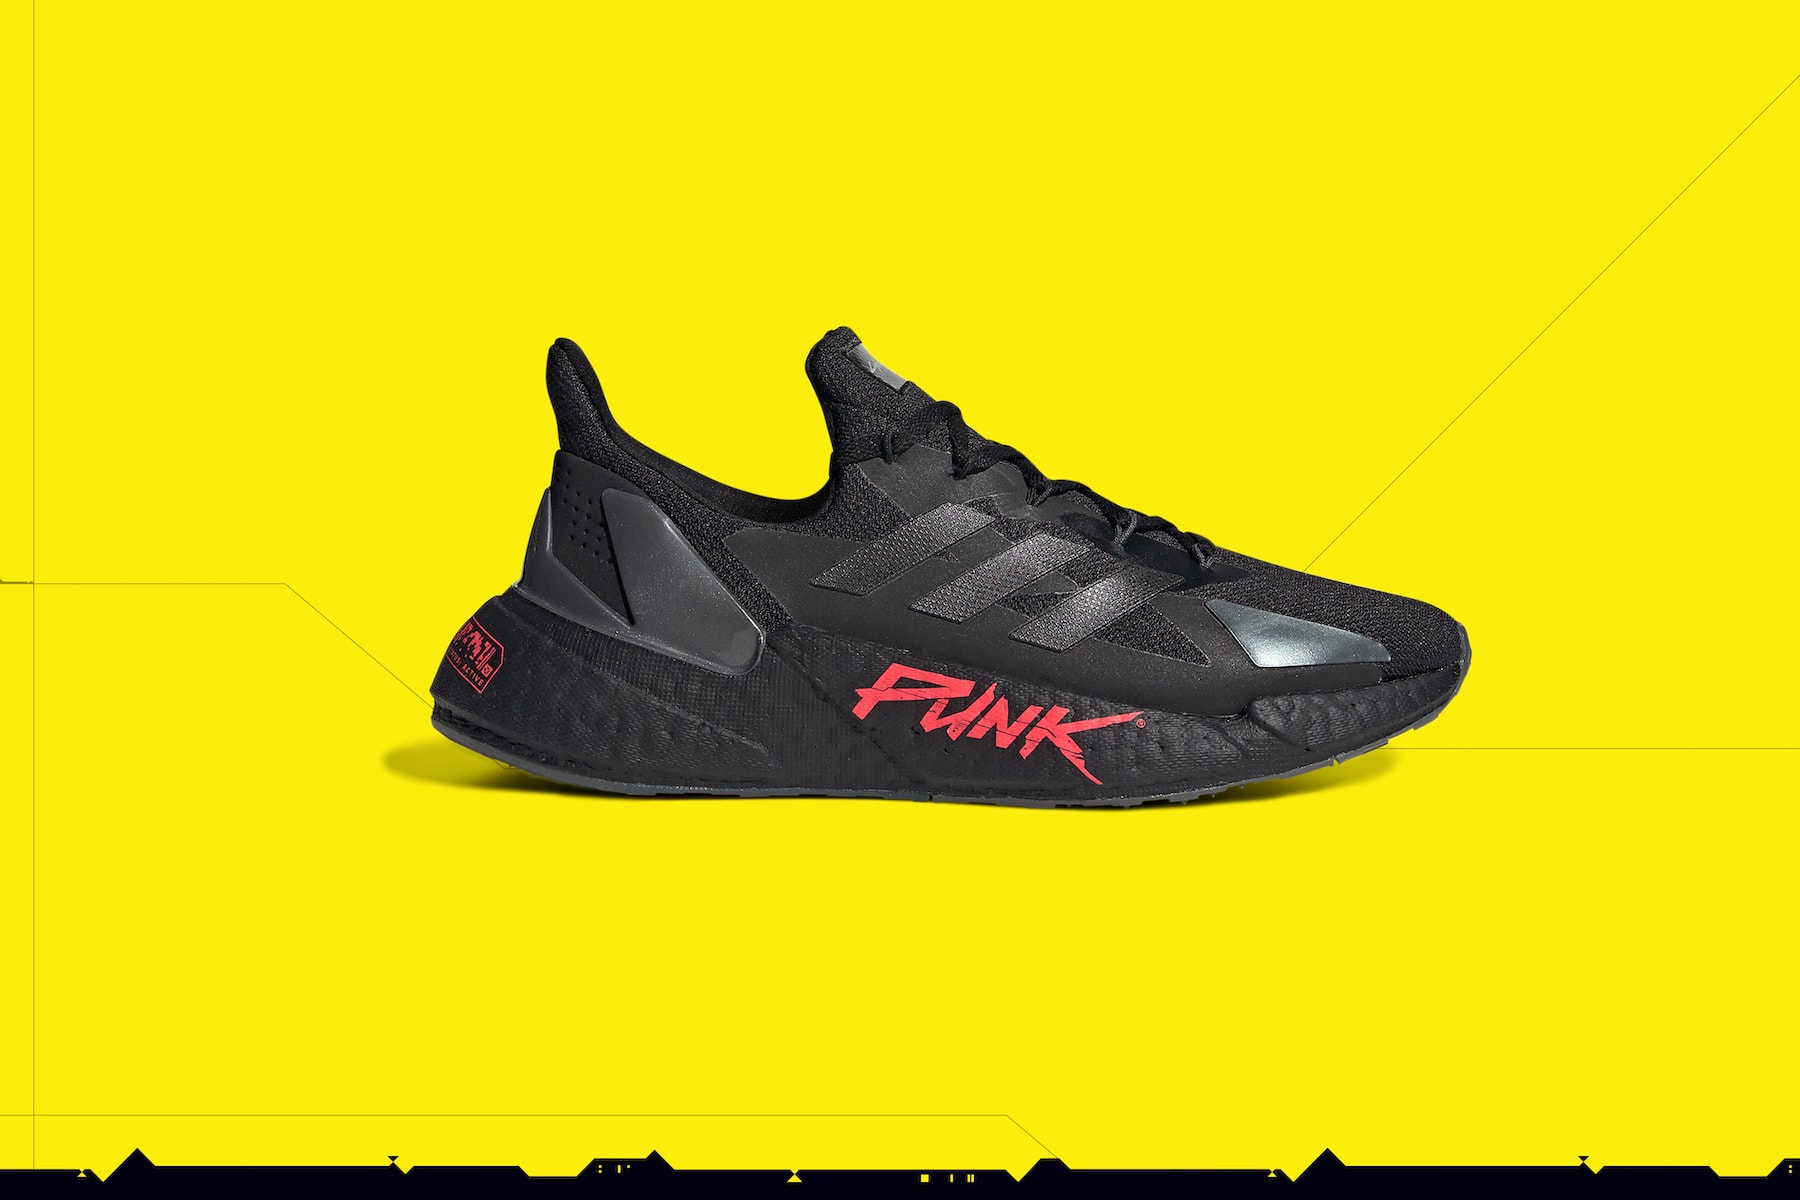 adidas 携手《Cyberpunk 2077》推出 X9000 联名鞋款系列